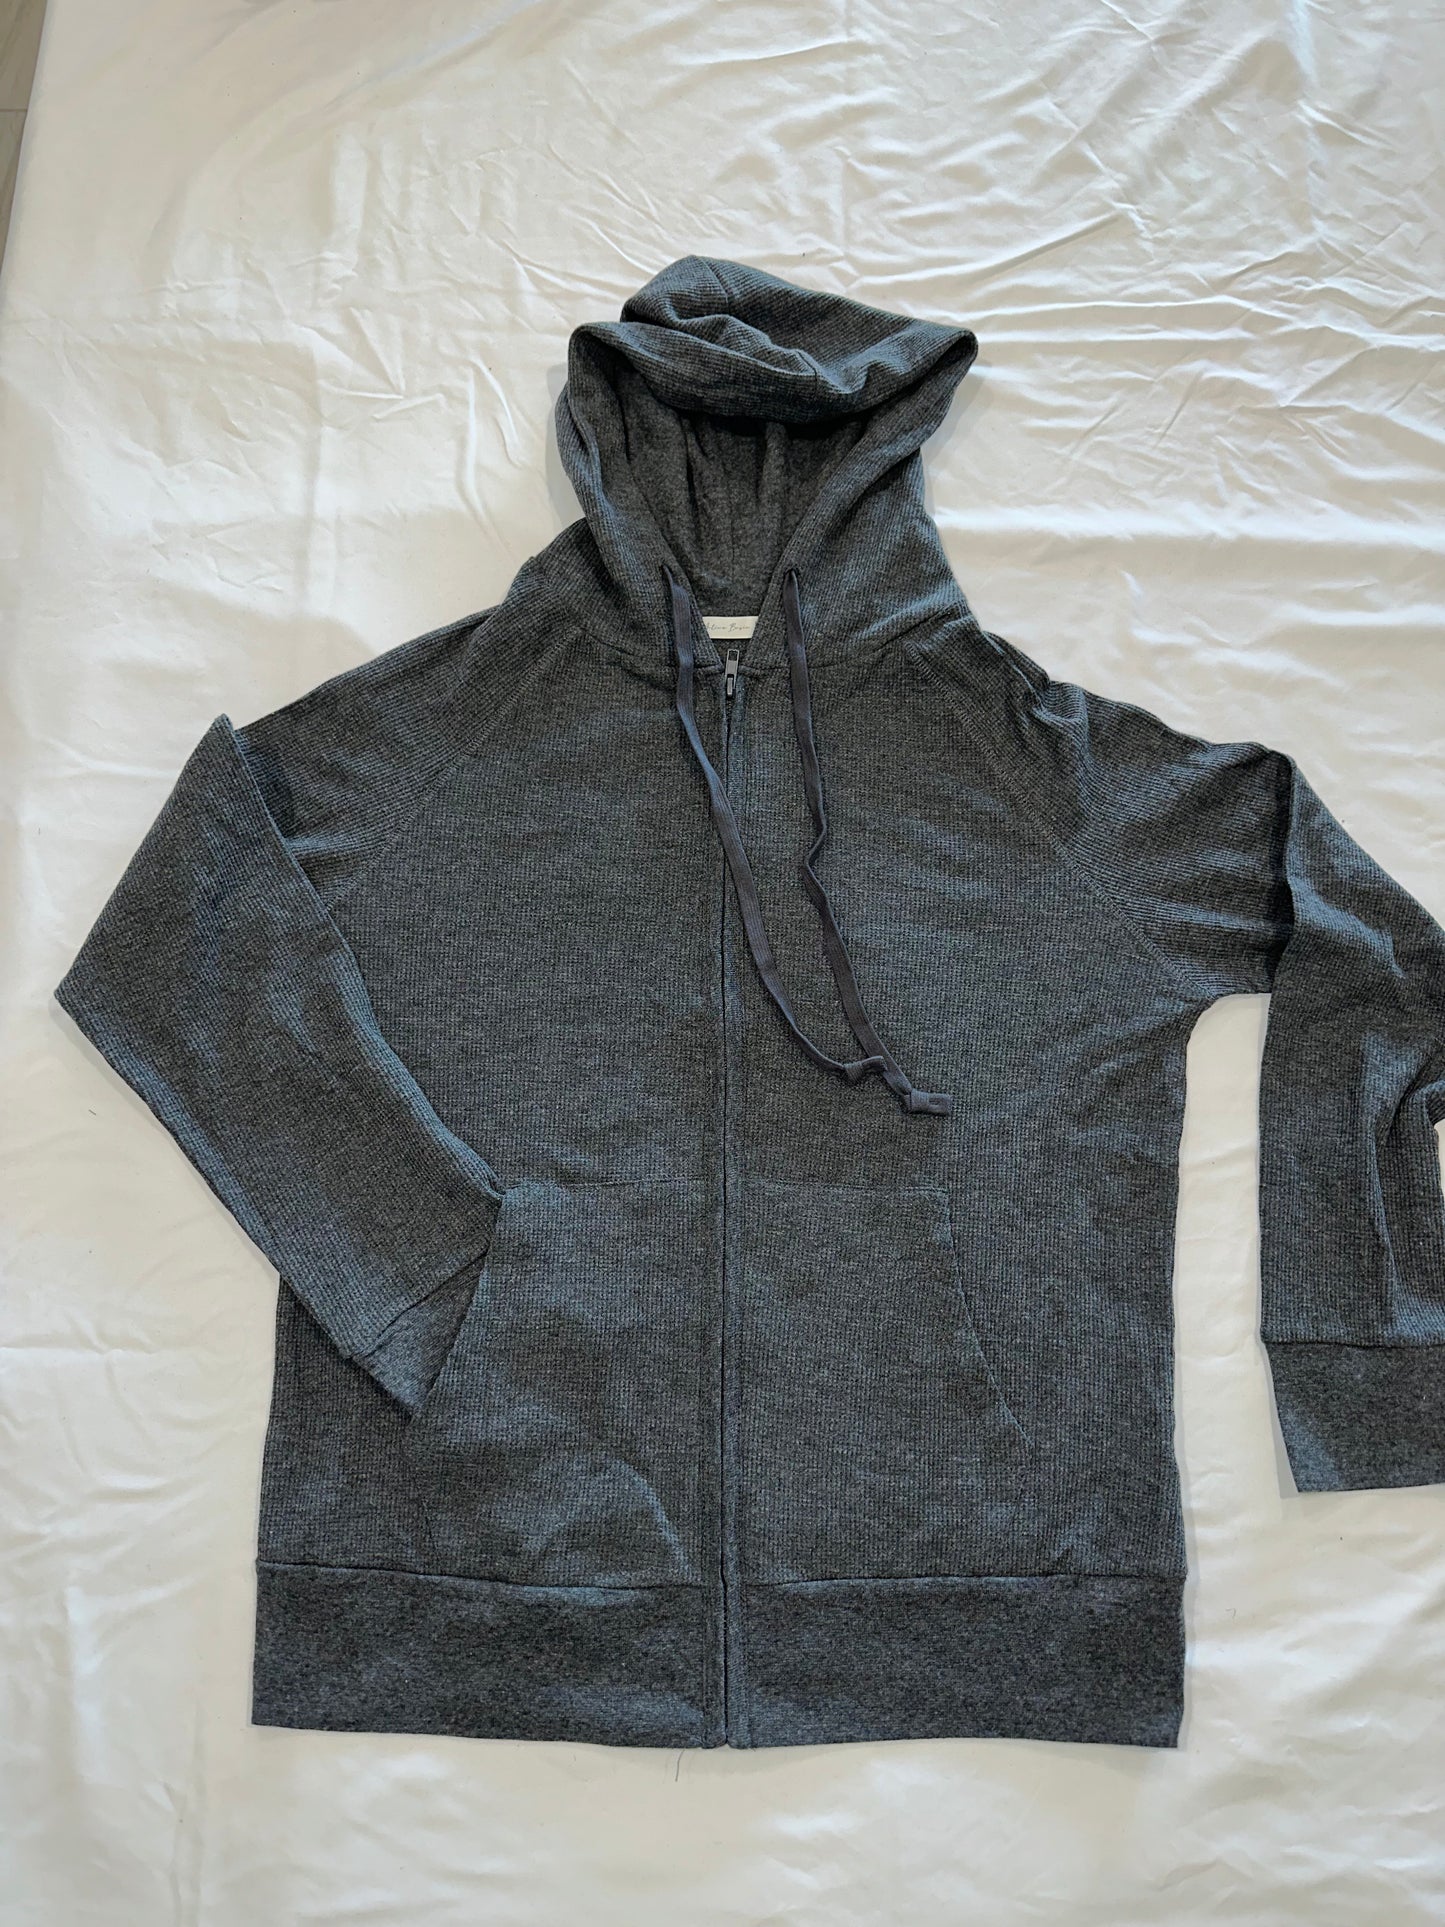 Dark Grey Thermal Zip Up Jacket Bling "Cali" Cursive Letter Design